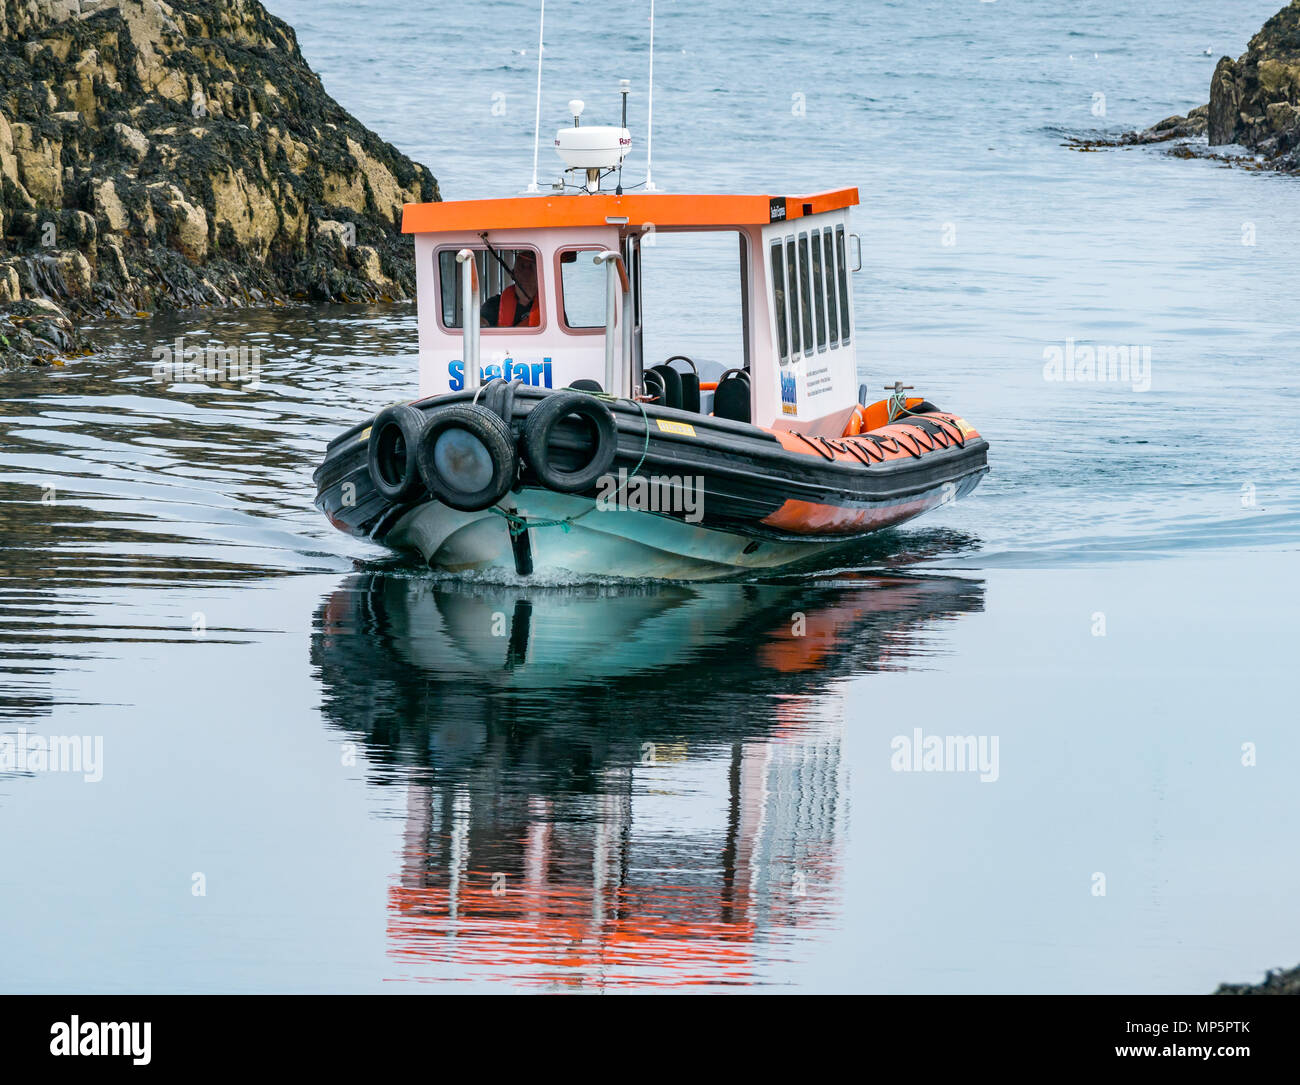 Seafari inflables rígidas acercándose barco turístico de la isla de mayo en aguas tranquilas, Scottish Natural Heritage reserva natural, Scotland, Reino Unido Foto de stock